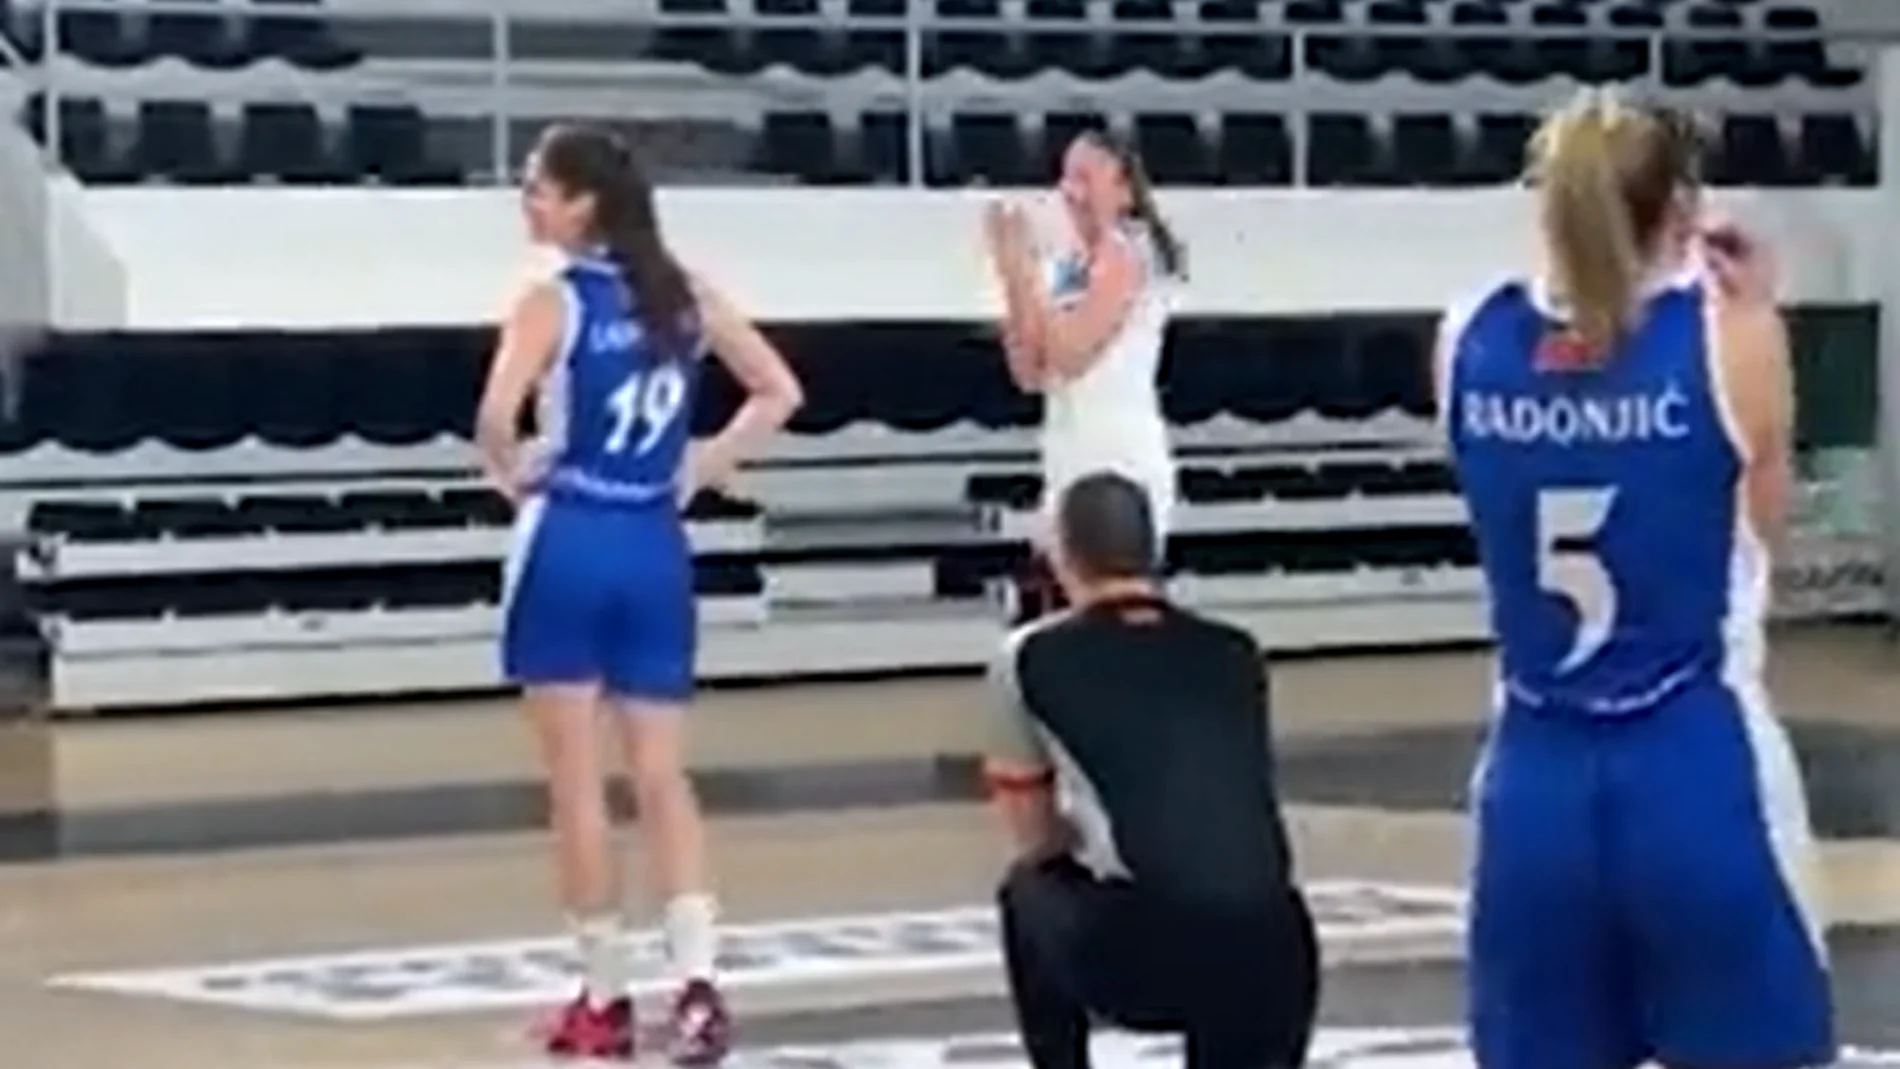 Un árbitro pide matrimonio a una jugadora en medio de un partido de baloncesto